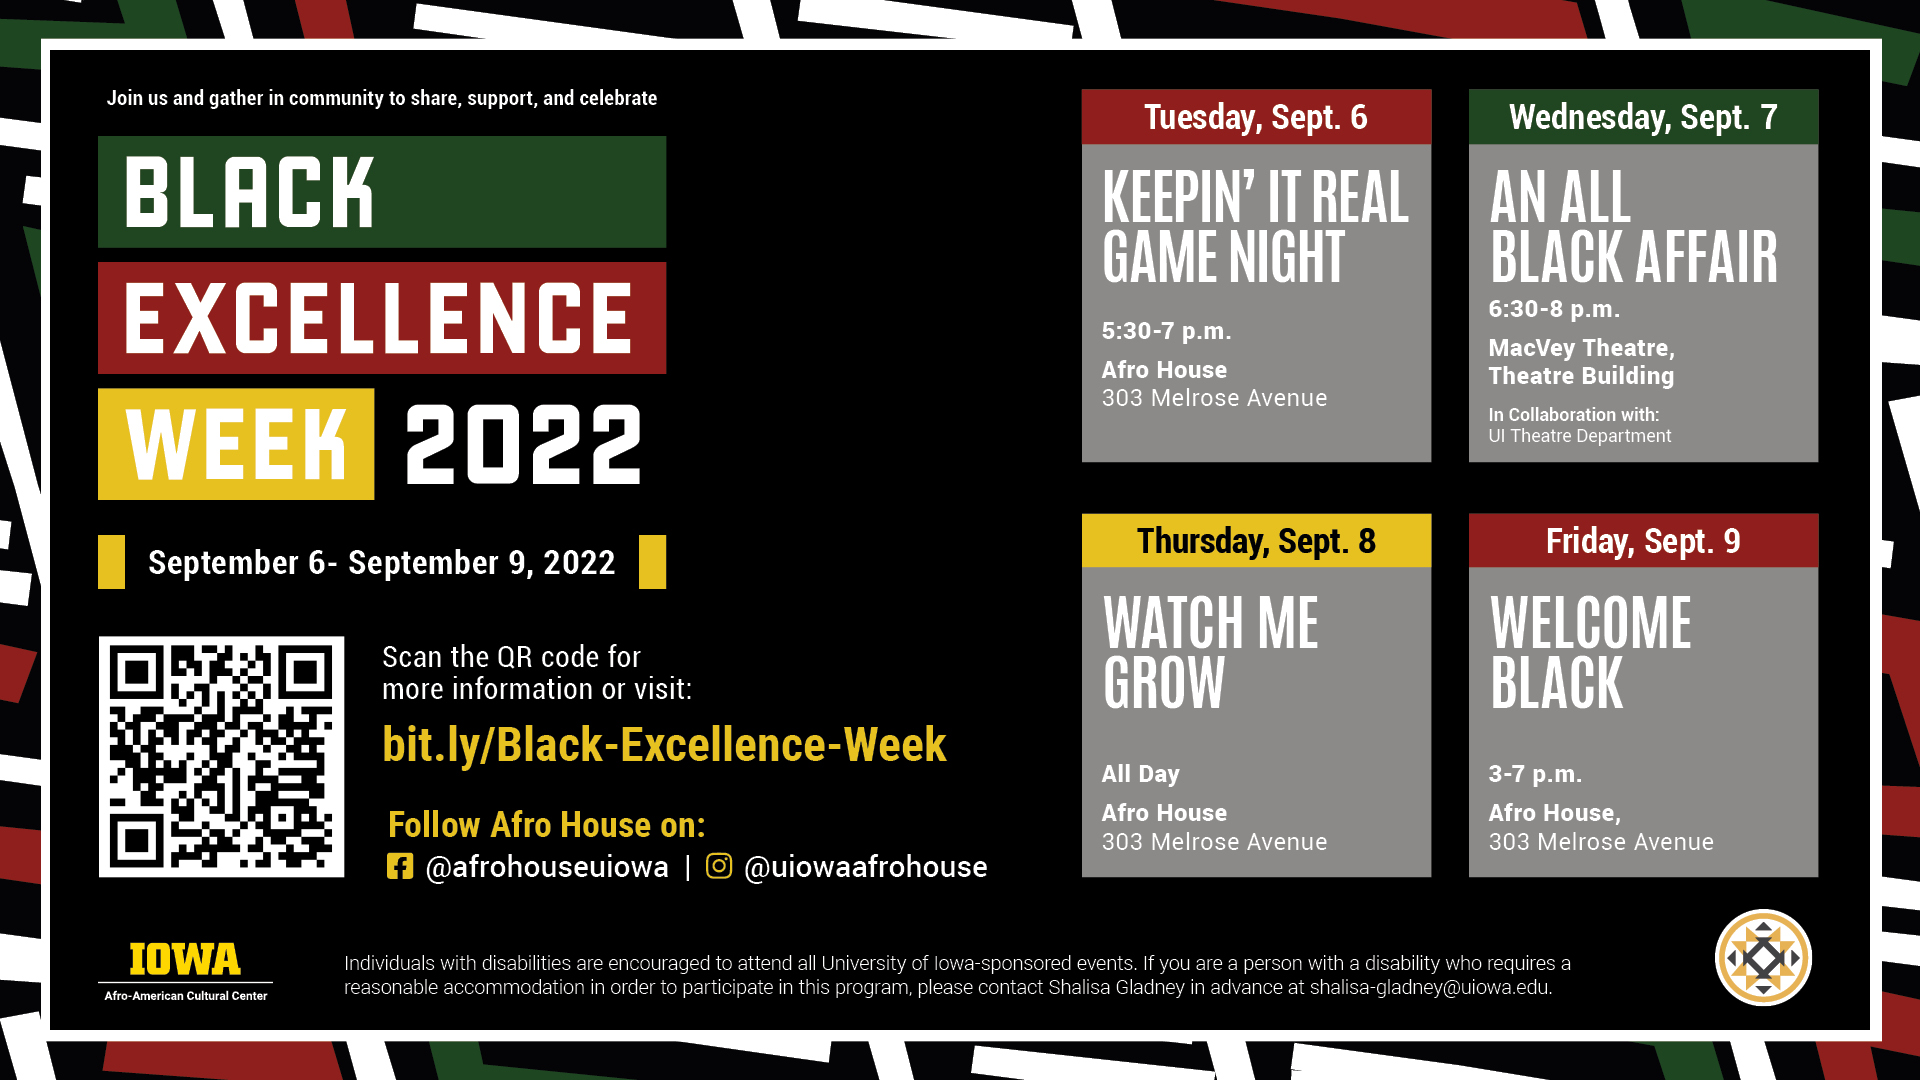 Black Excellence Week 2022 Schedule, please visit bit.ly/Black-Excellence-Week for more information